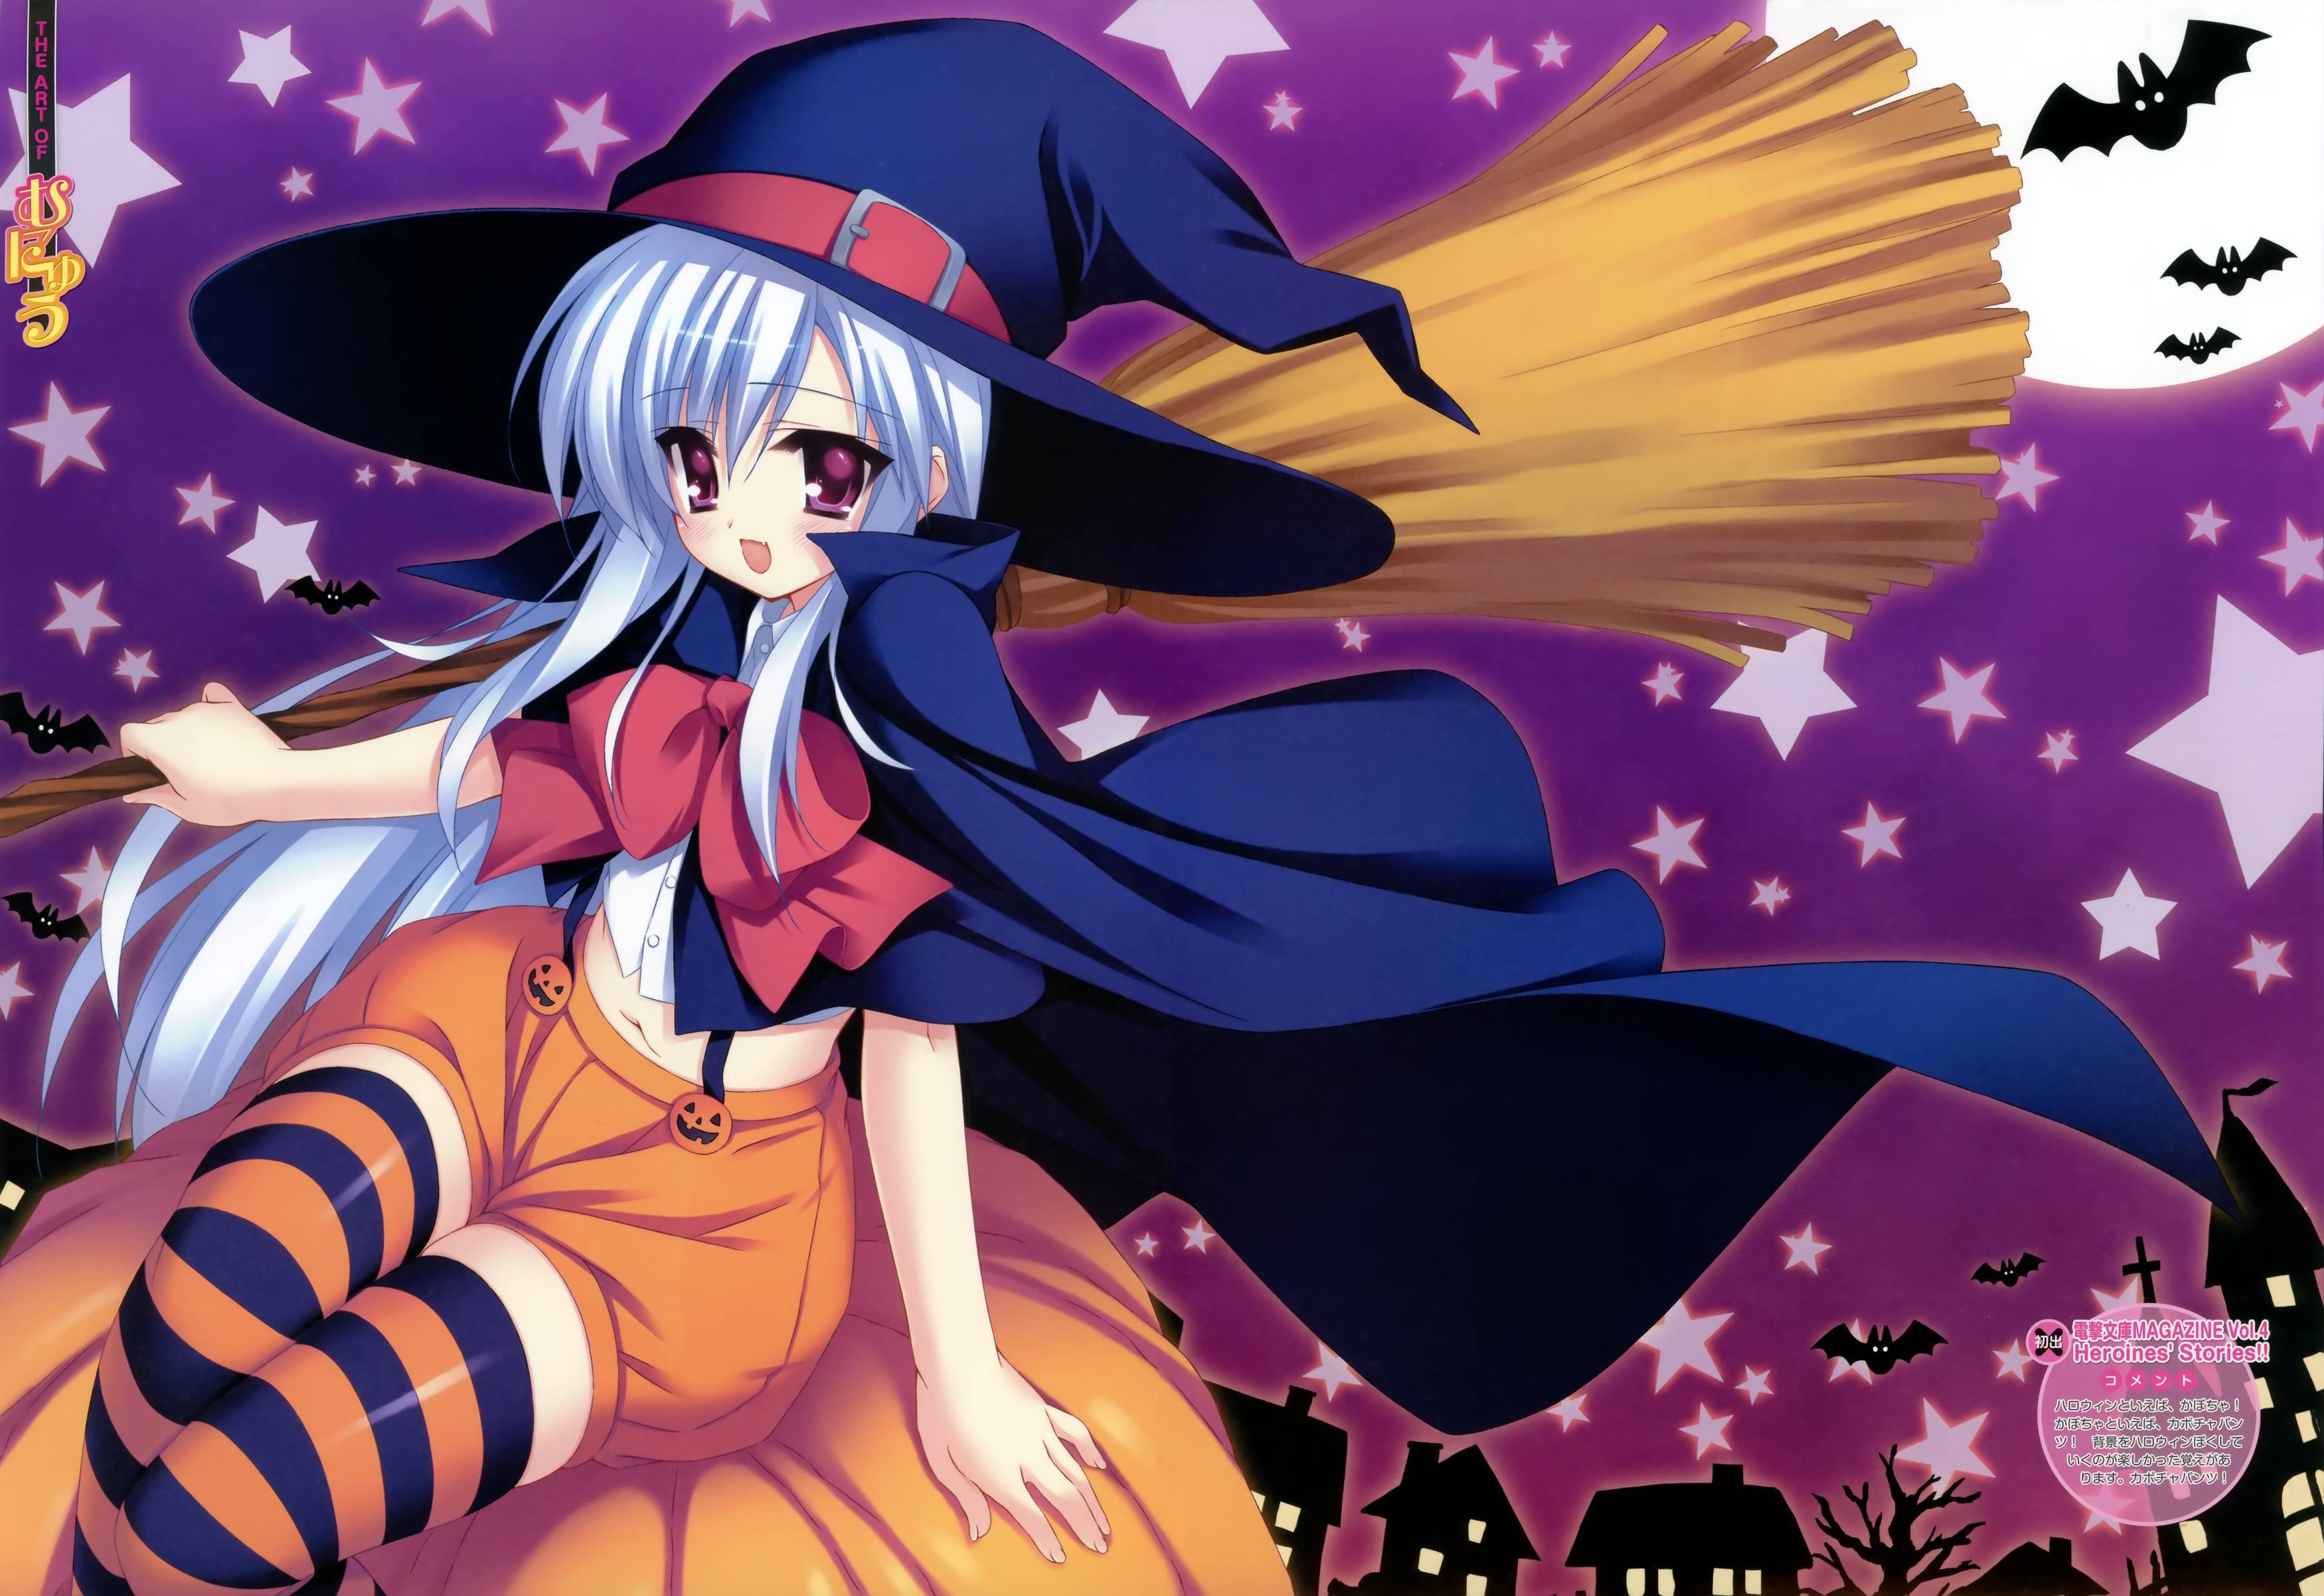 Shooting Star Dreamer Anime Halloween Wallpaper Pack